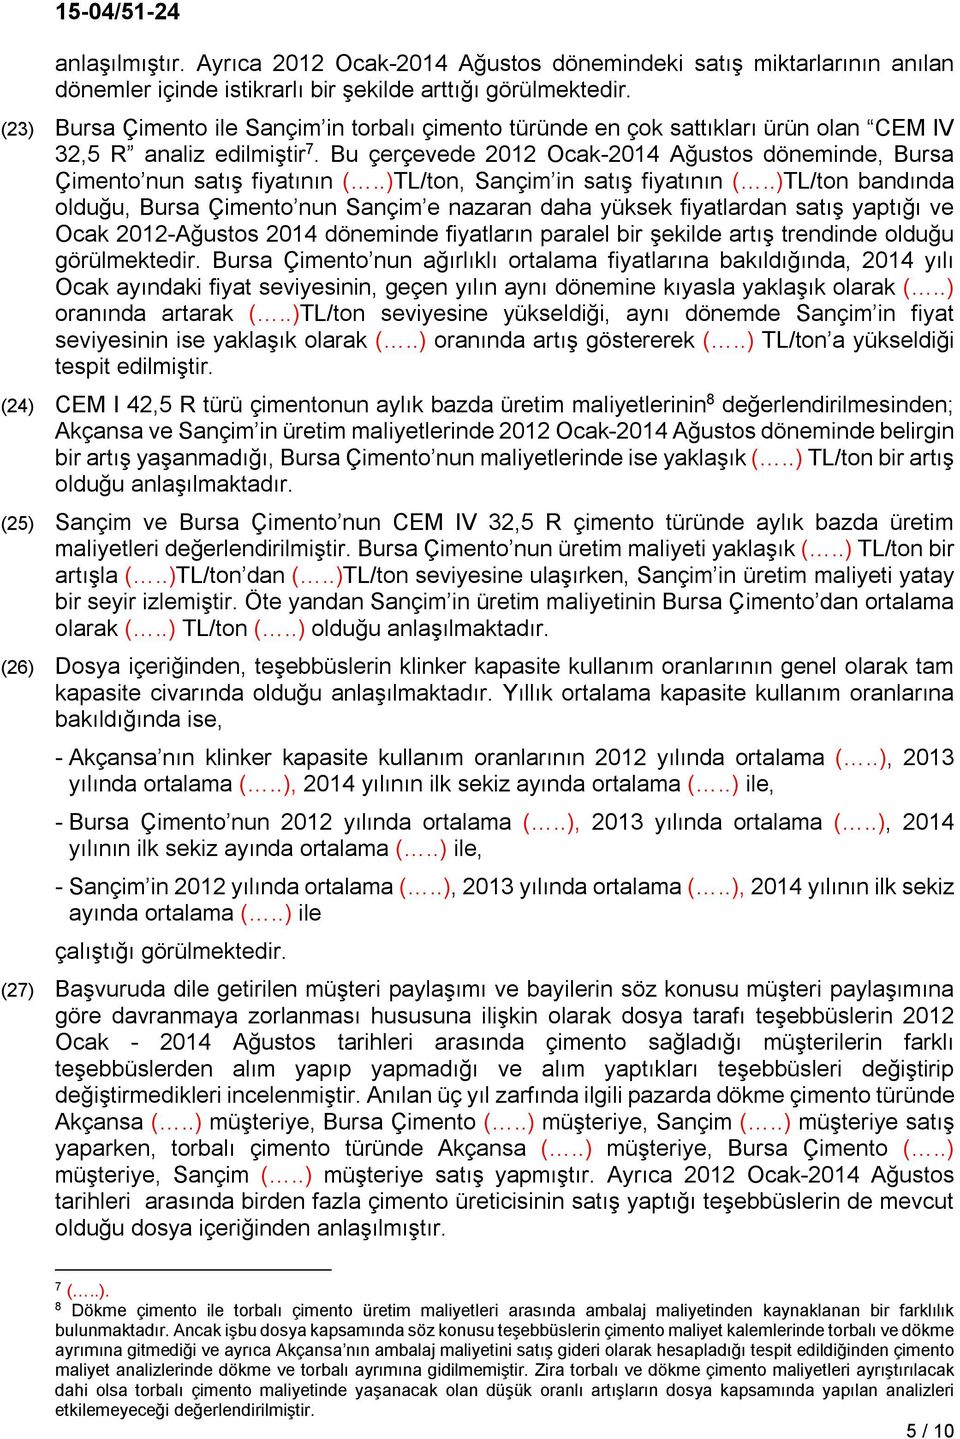 Bu çerçevede 2012 Ocak-2014 Ağustos döneminde, Bursa Çimento nun satış fiyatının (..)TL/ton, Sançim in satış fiyatının (.